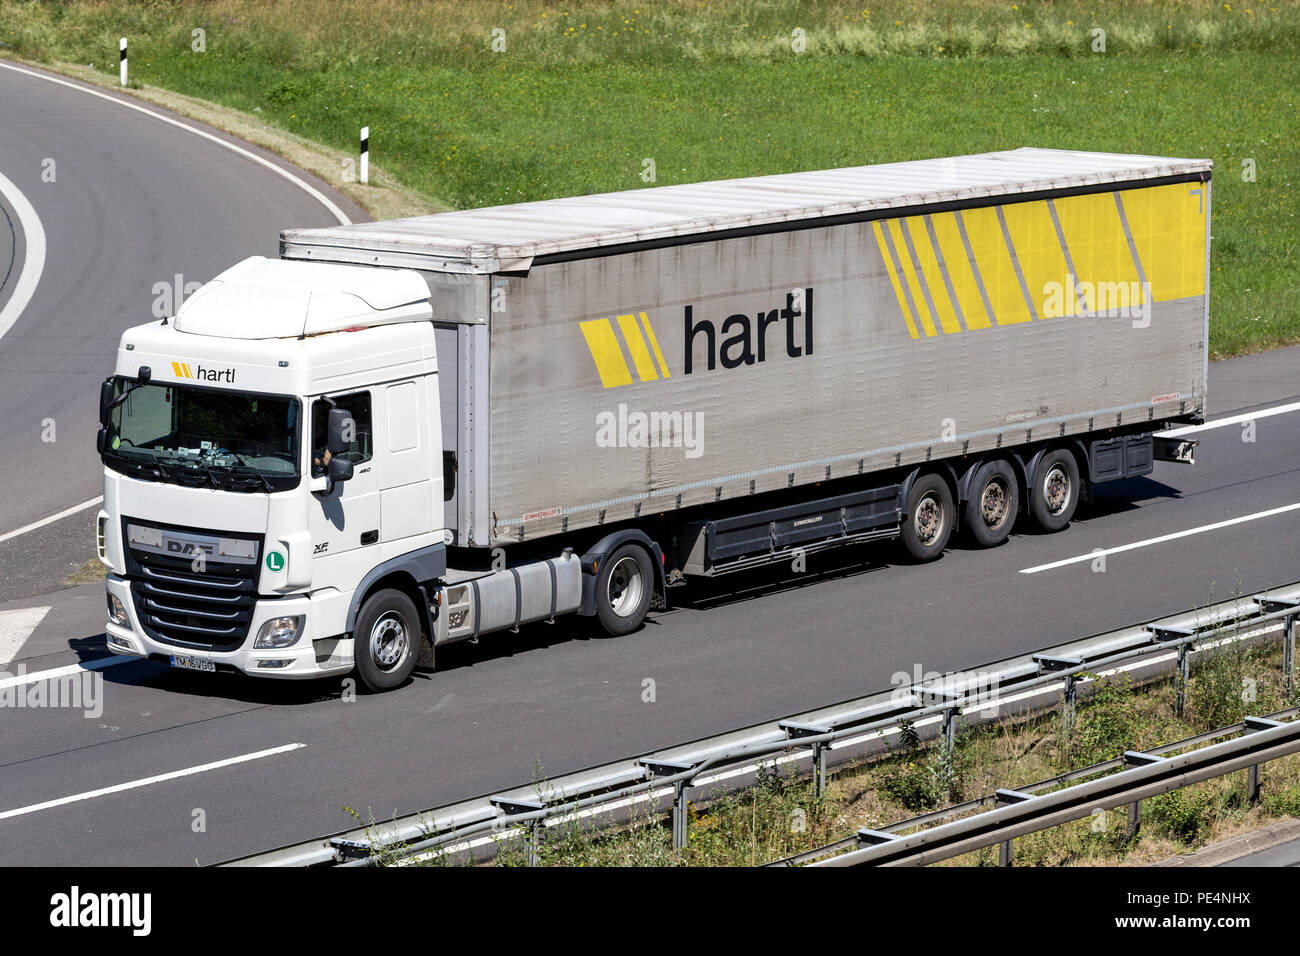 Hartl Lkw auf der Autobahn. Hartl liefert volle LKW-Transporte in ganz Europa und wurde 1965 von Ernst Hartl in Saalfelden/Österreich gegründet. Stockfoto